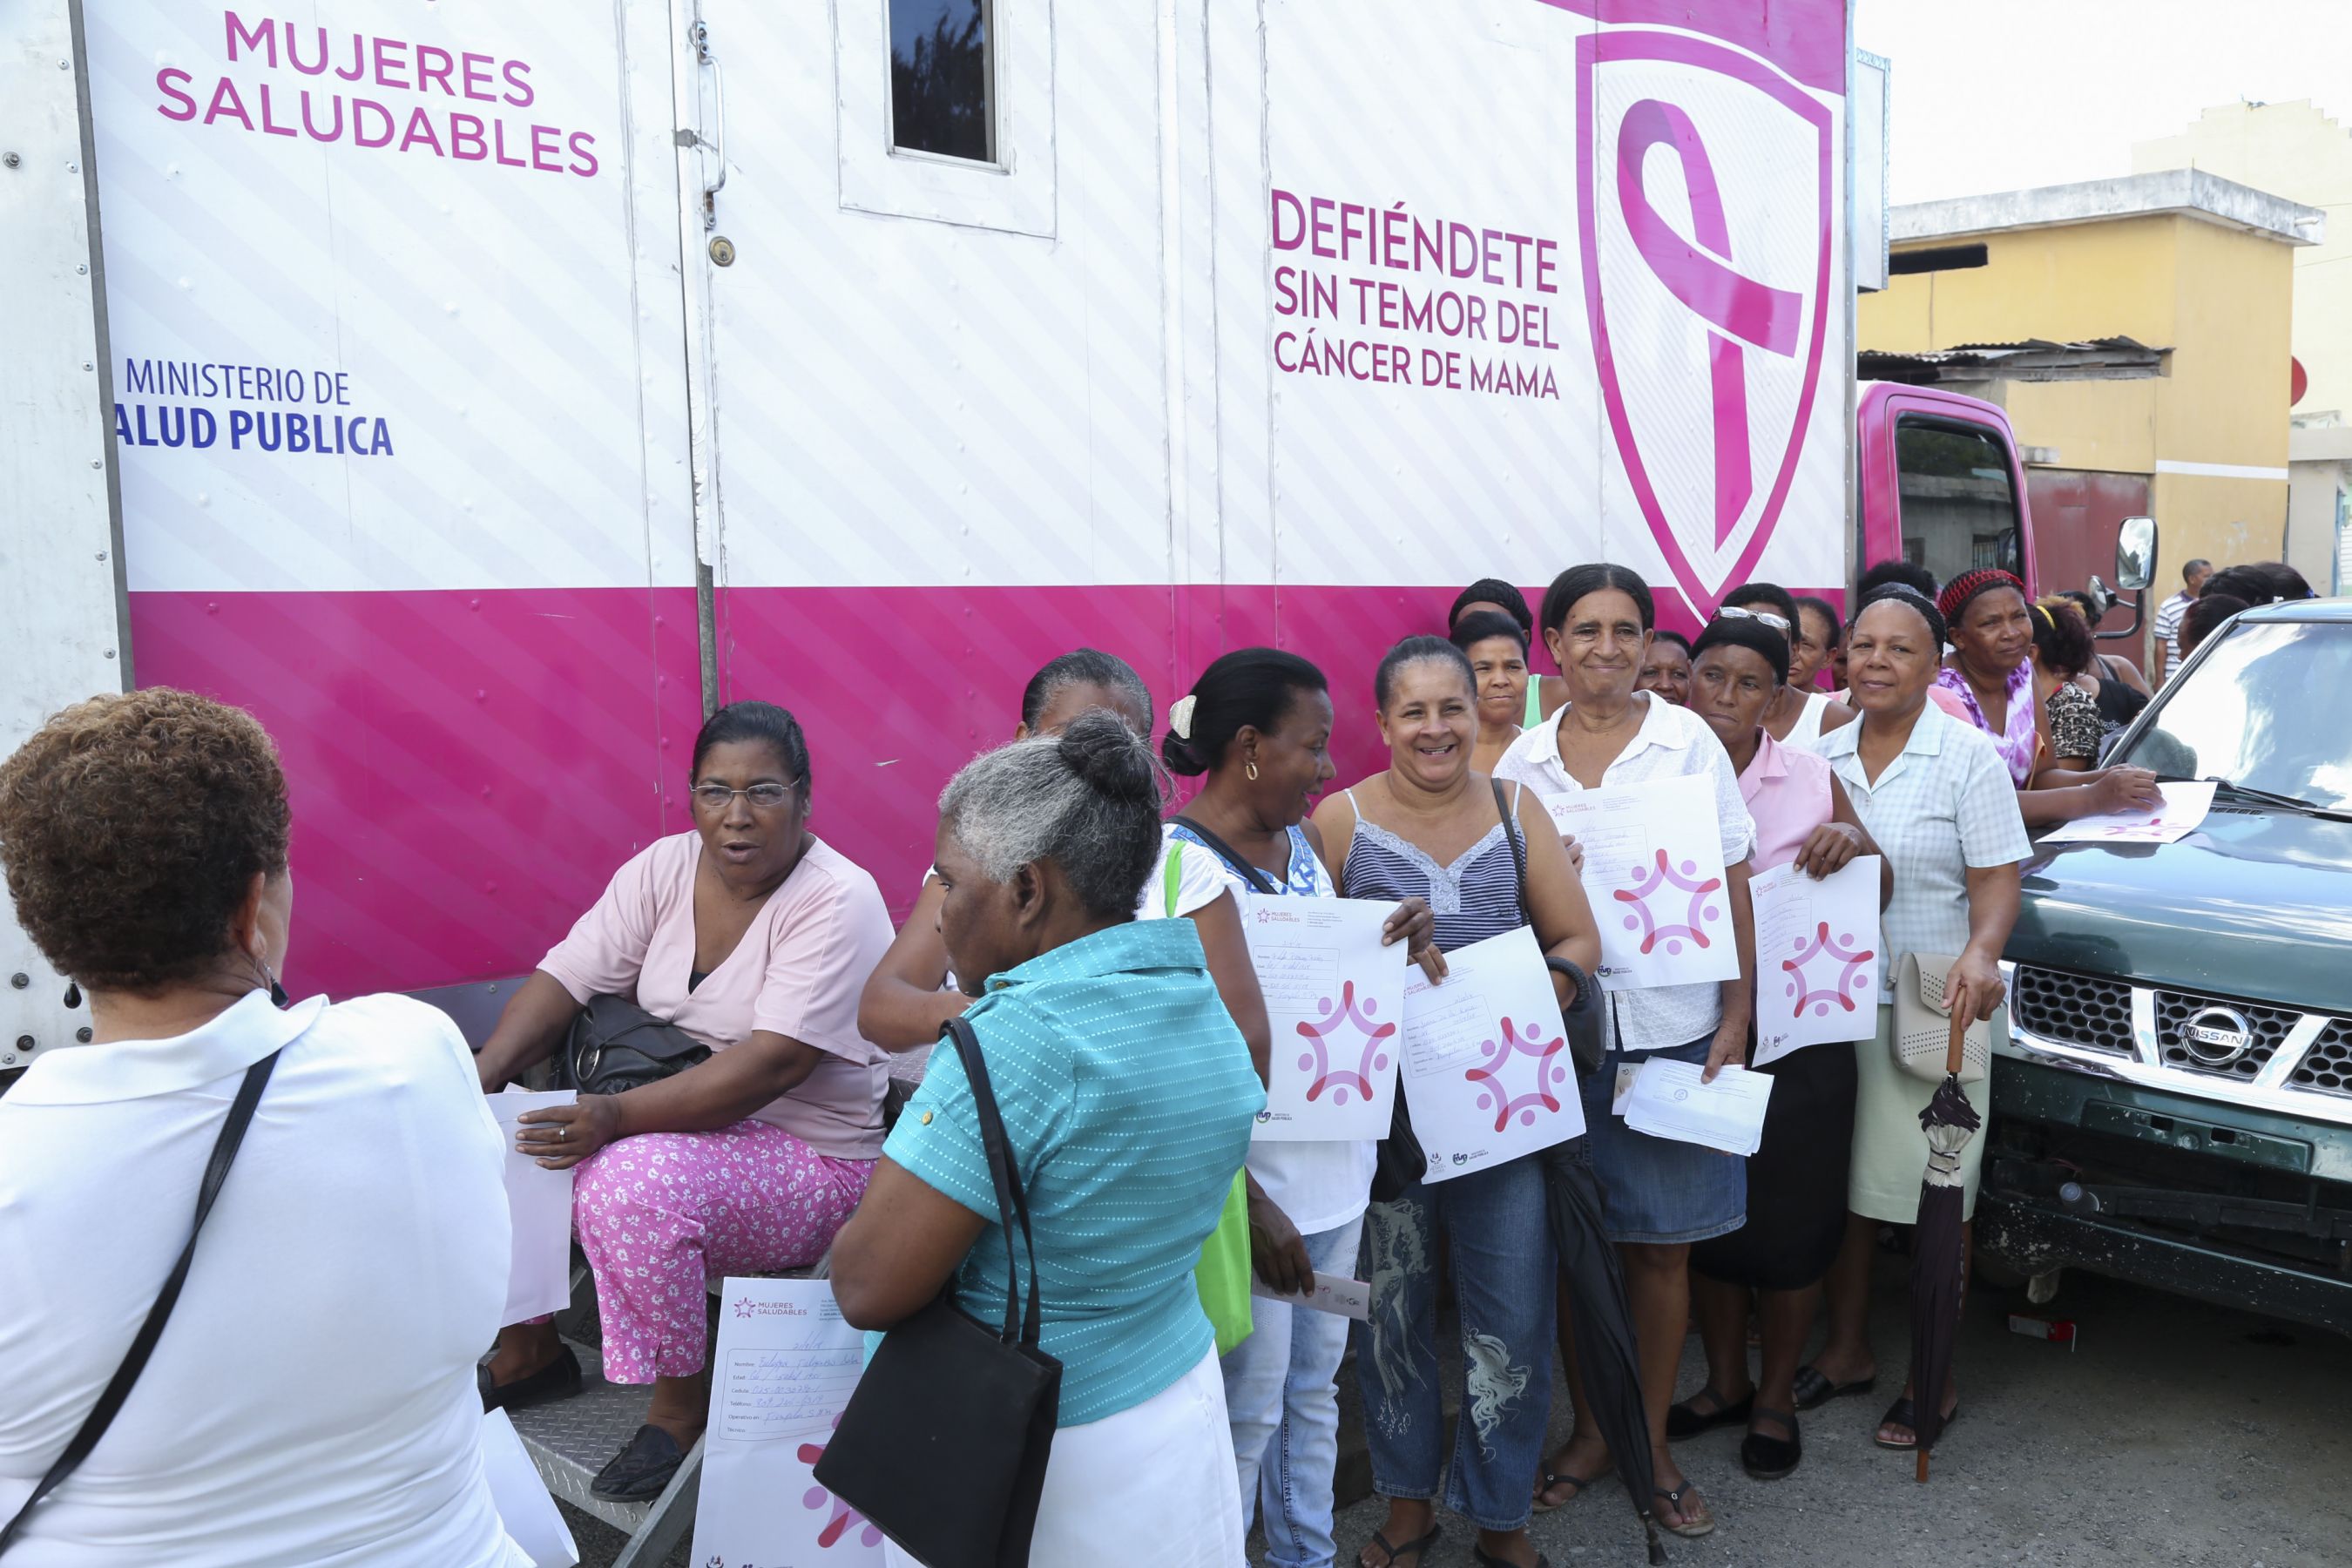 REPÚBLICA DOMINICANA: Gestión de Cándida Montilla contribuyó a salvar vidas de más de cien mil mujeres que padecieron cáncer de mama y osteoporosis